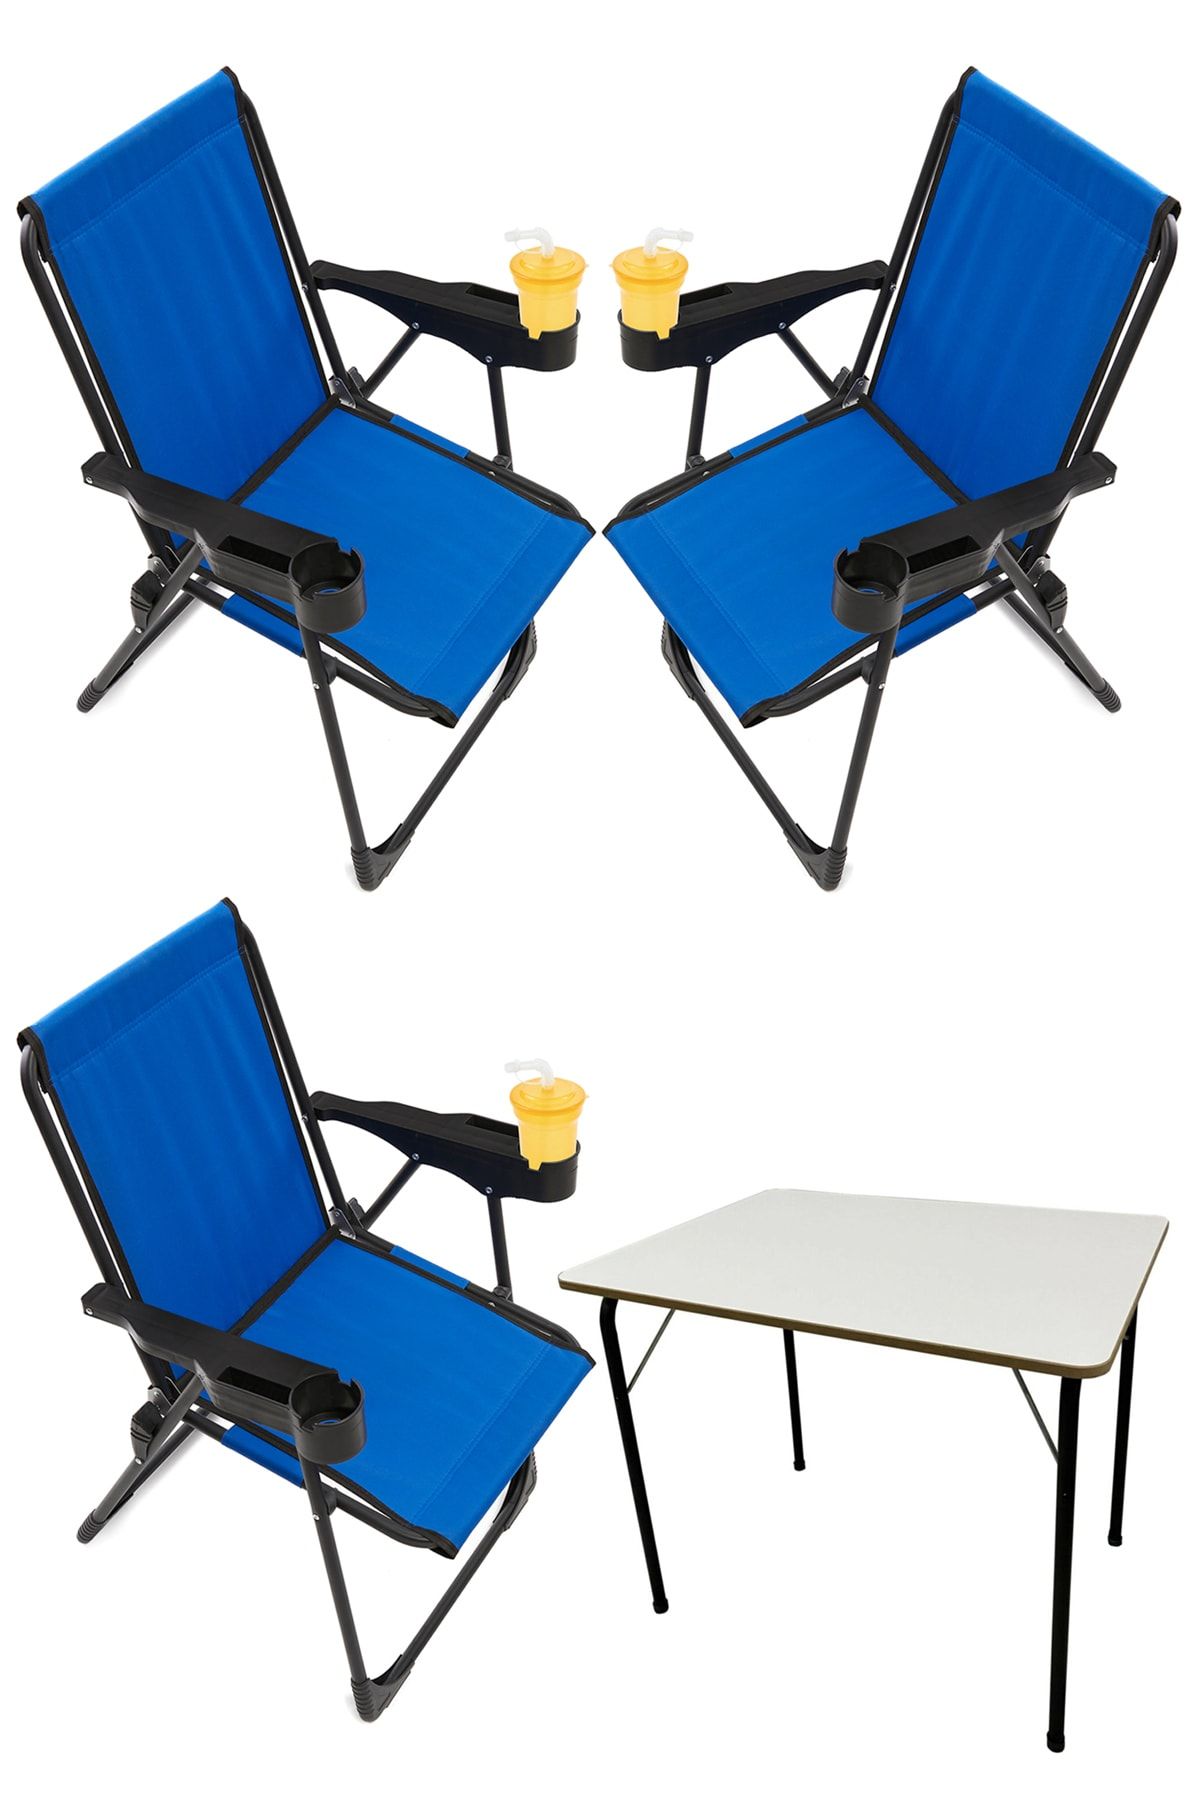 moniev Silva 3 Adet Kamp Sandalyesi Bardaklıklı Lüks Piknik Sandalye Mavi + Katlanır Mdf Masa